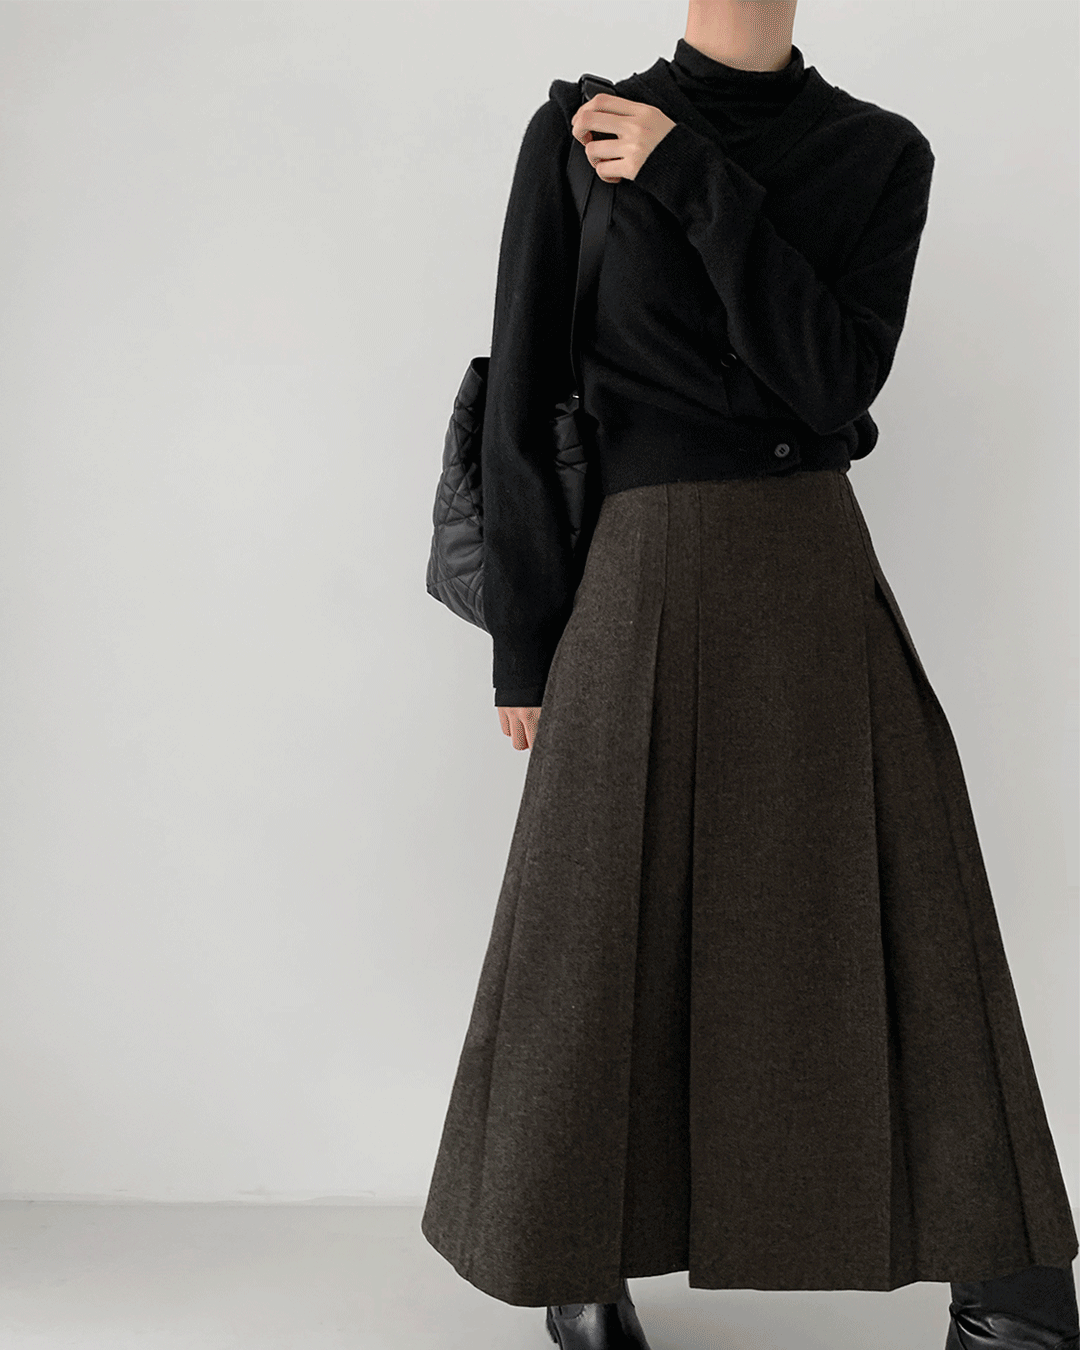 Classy skirt